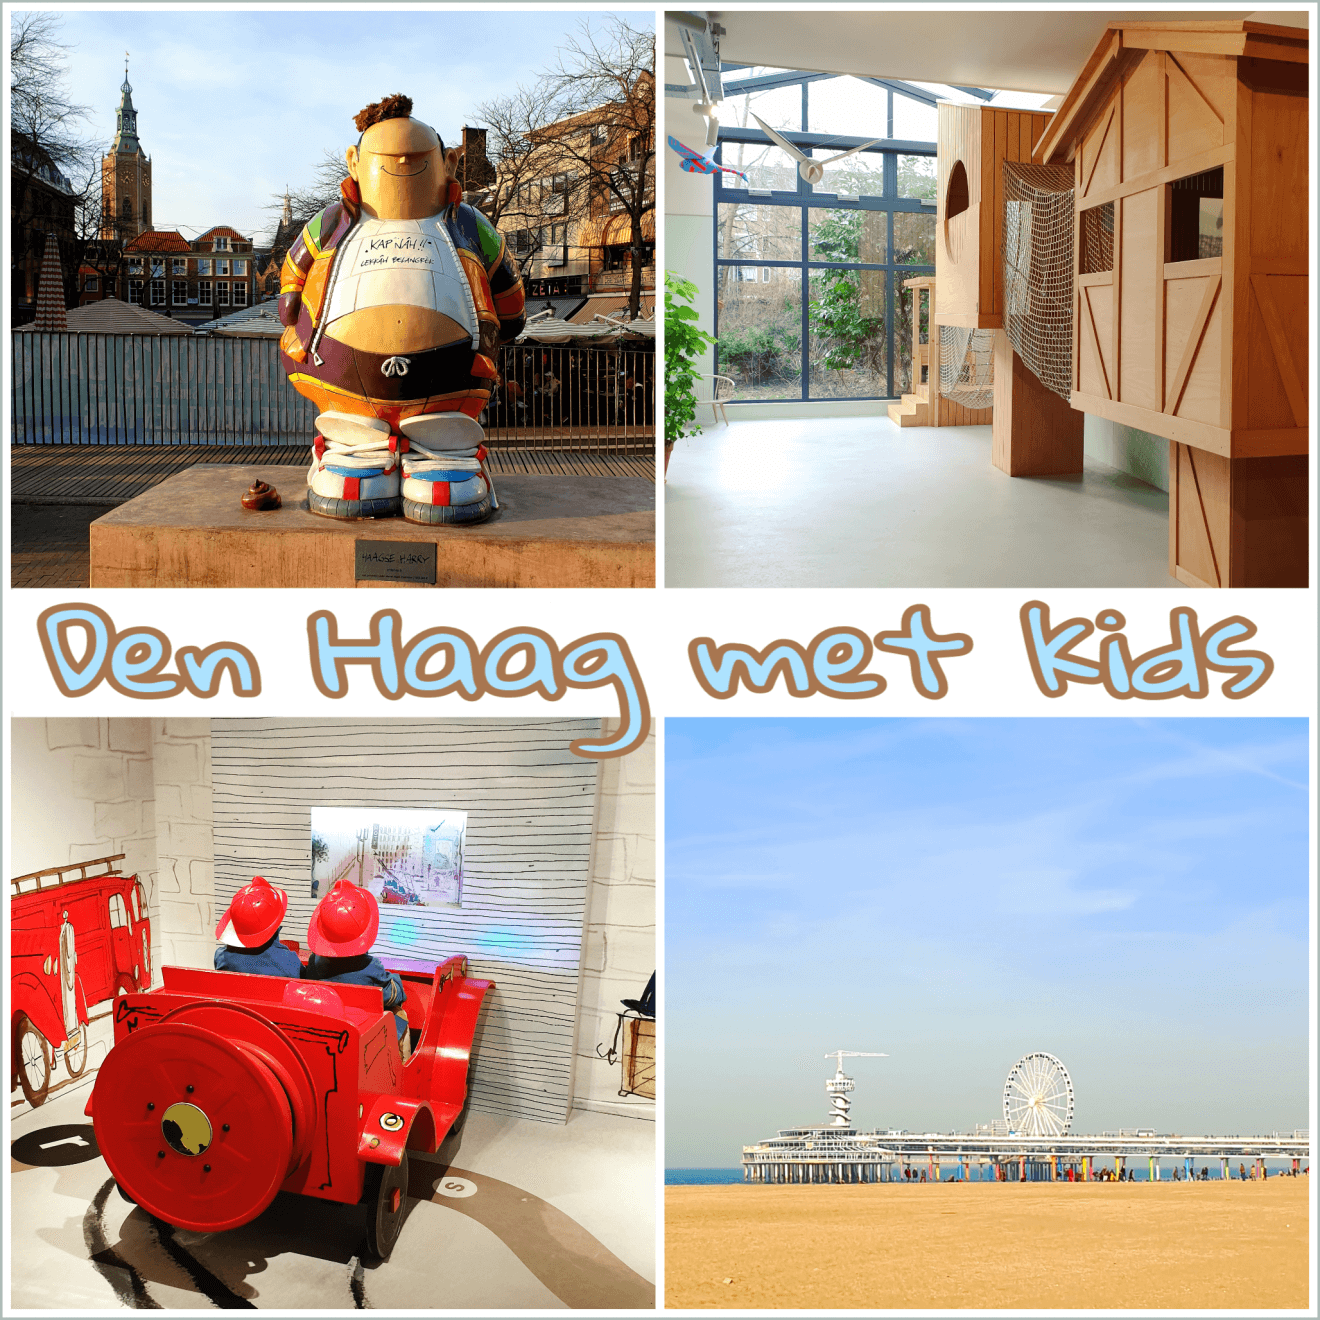 Den Haag met kids: uitjes, musea, speeltuinen, zwemplekken, kinderboerderijen, winkels, restaurants en meer